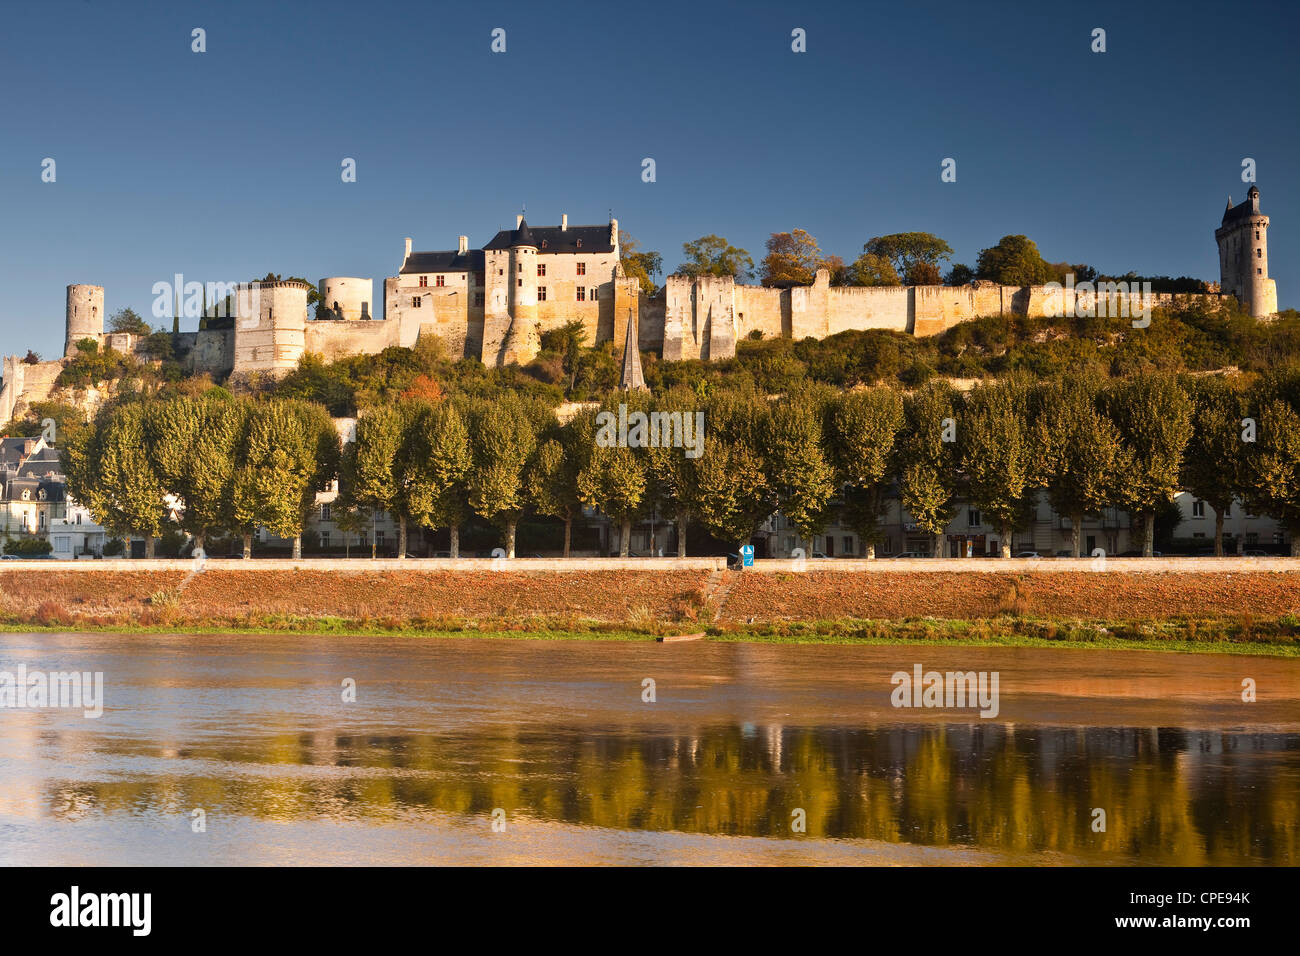 Le château de Chinon, UNESCO World Heritage Site, Indre-et-Loire, Loire, France, Europe Banque D'Images